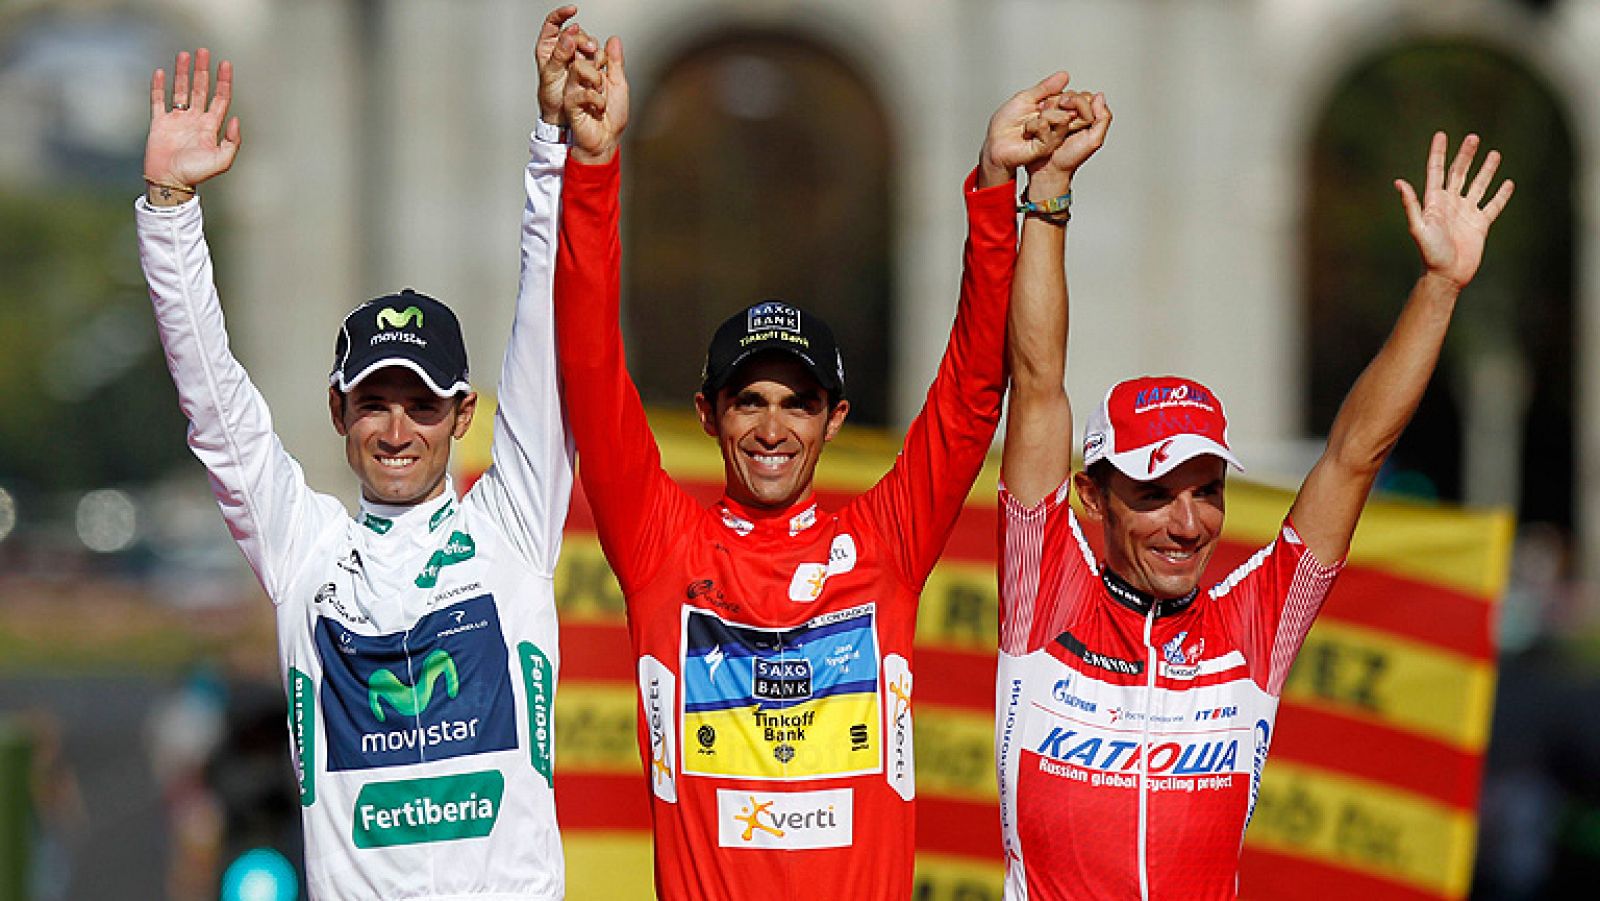 Valverde y 'Purito' escoltan a Contador en el podio de la Vuelta